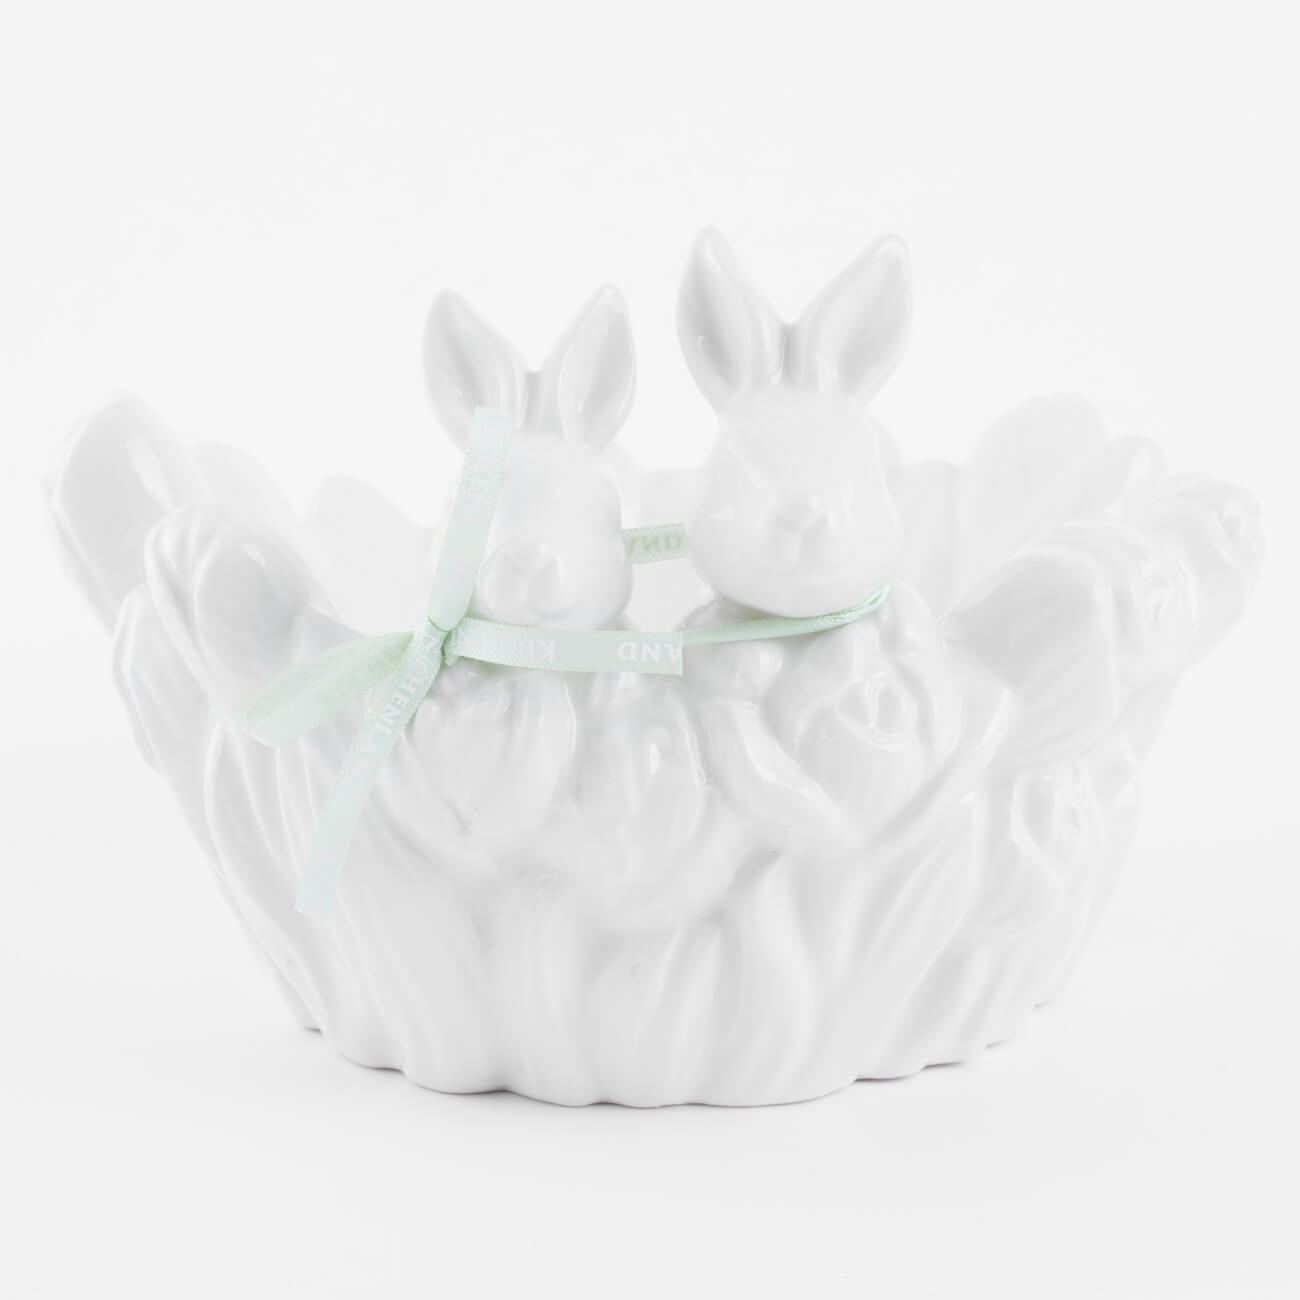 конфетница 30х12 см с ручками керамика белая перламутр два кролика в корзине easter Конфетница, 20х13 см, керамика, белая, Кролики в тюльпанах, Easter blooming